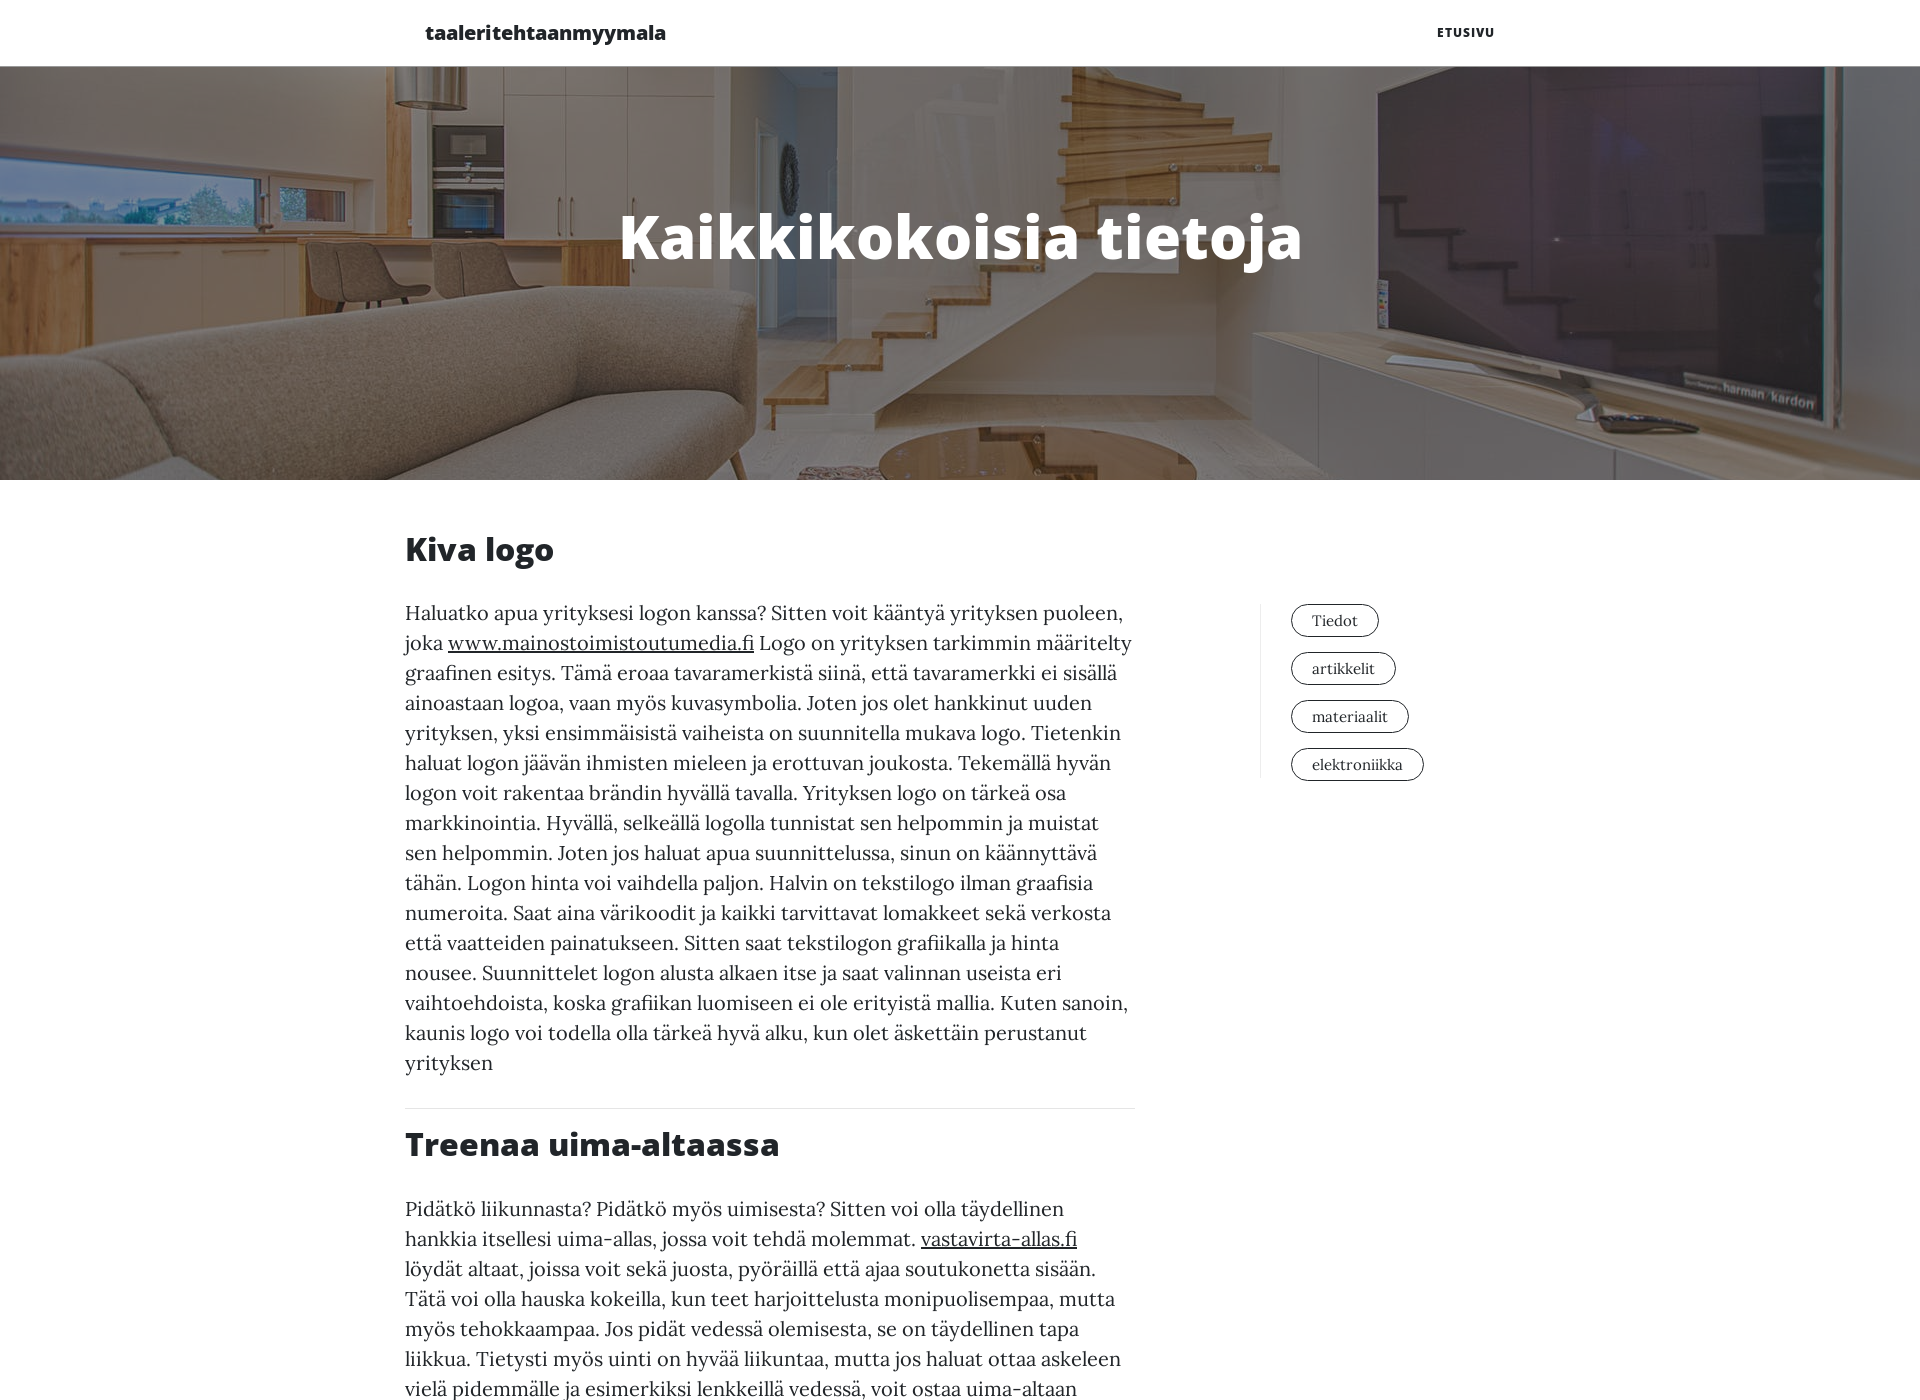 Skärmdump för taaleritehtaanmyymala.fi